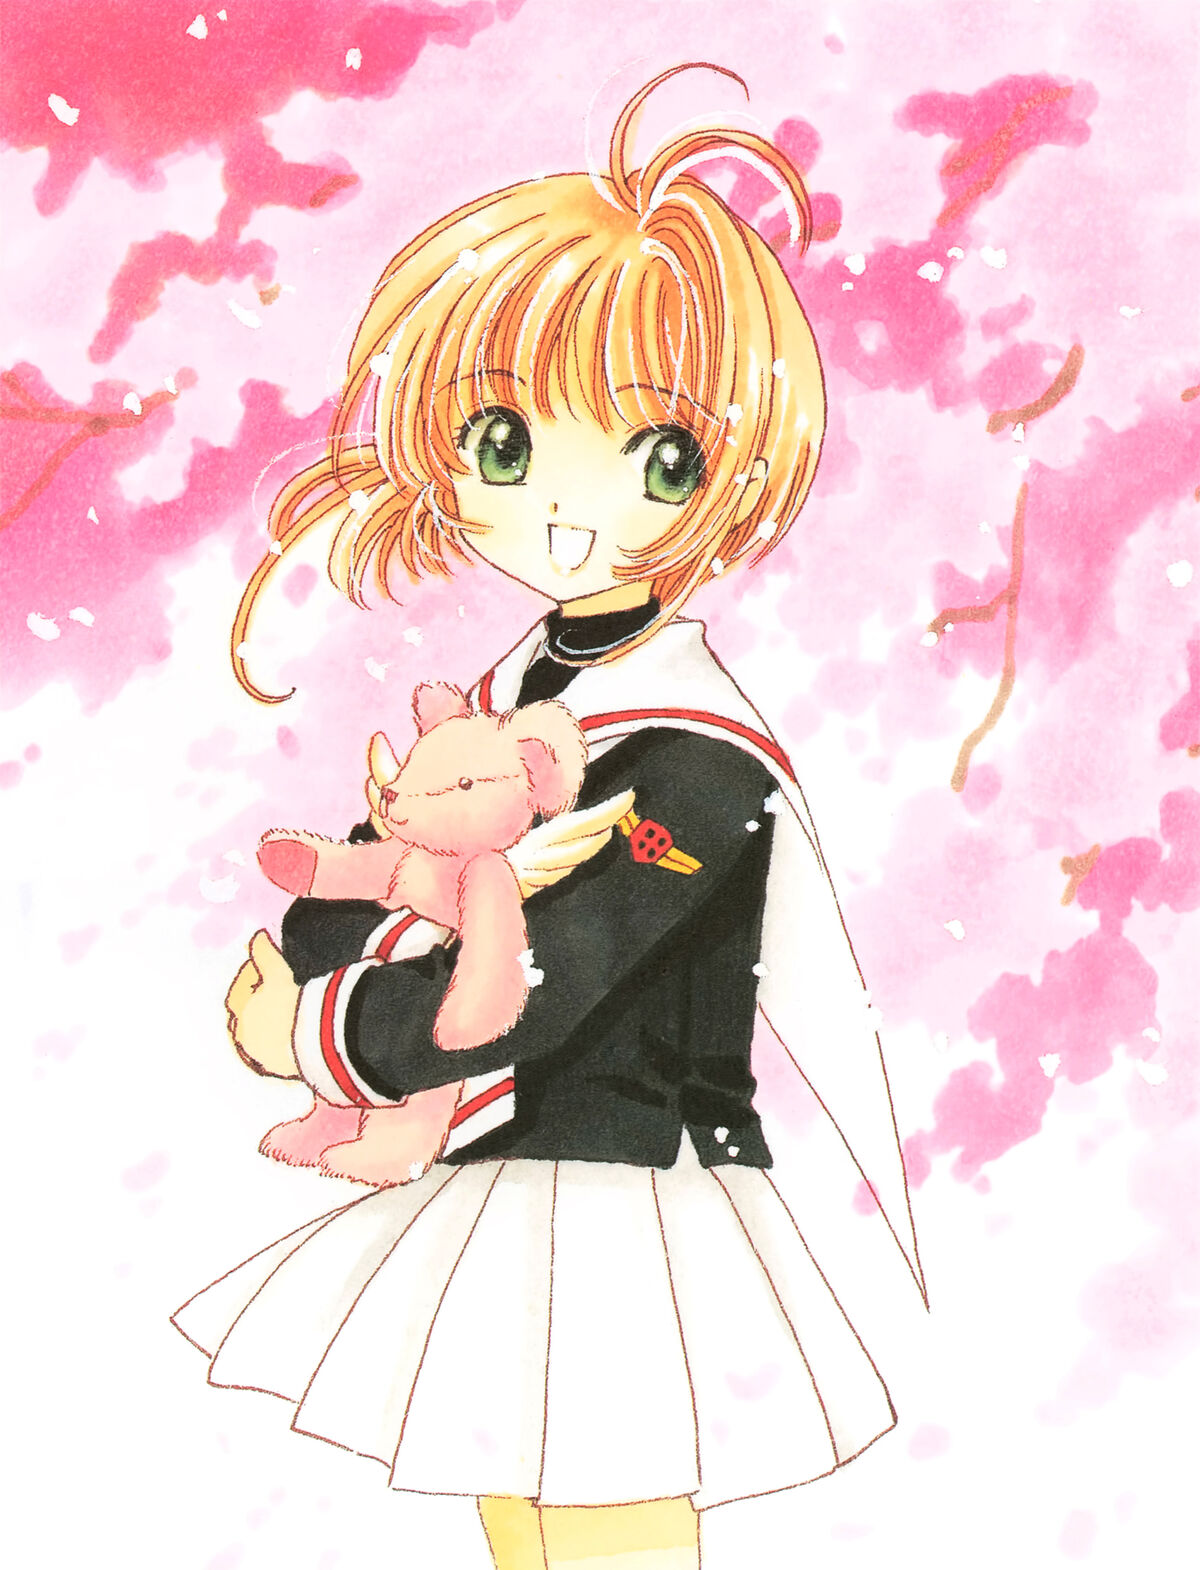 Image of Sakura Kinomoto from Cardcaptor Sakura anime